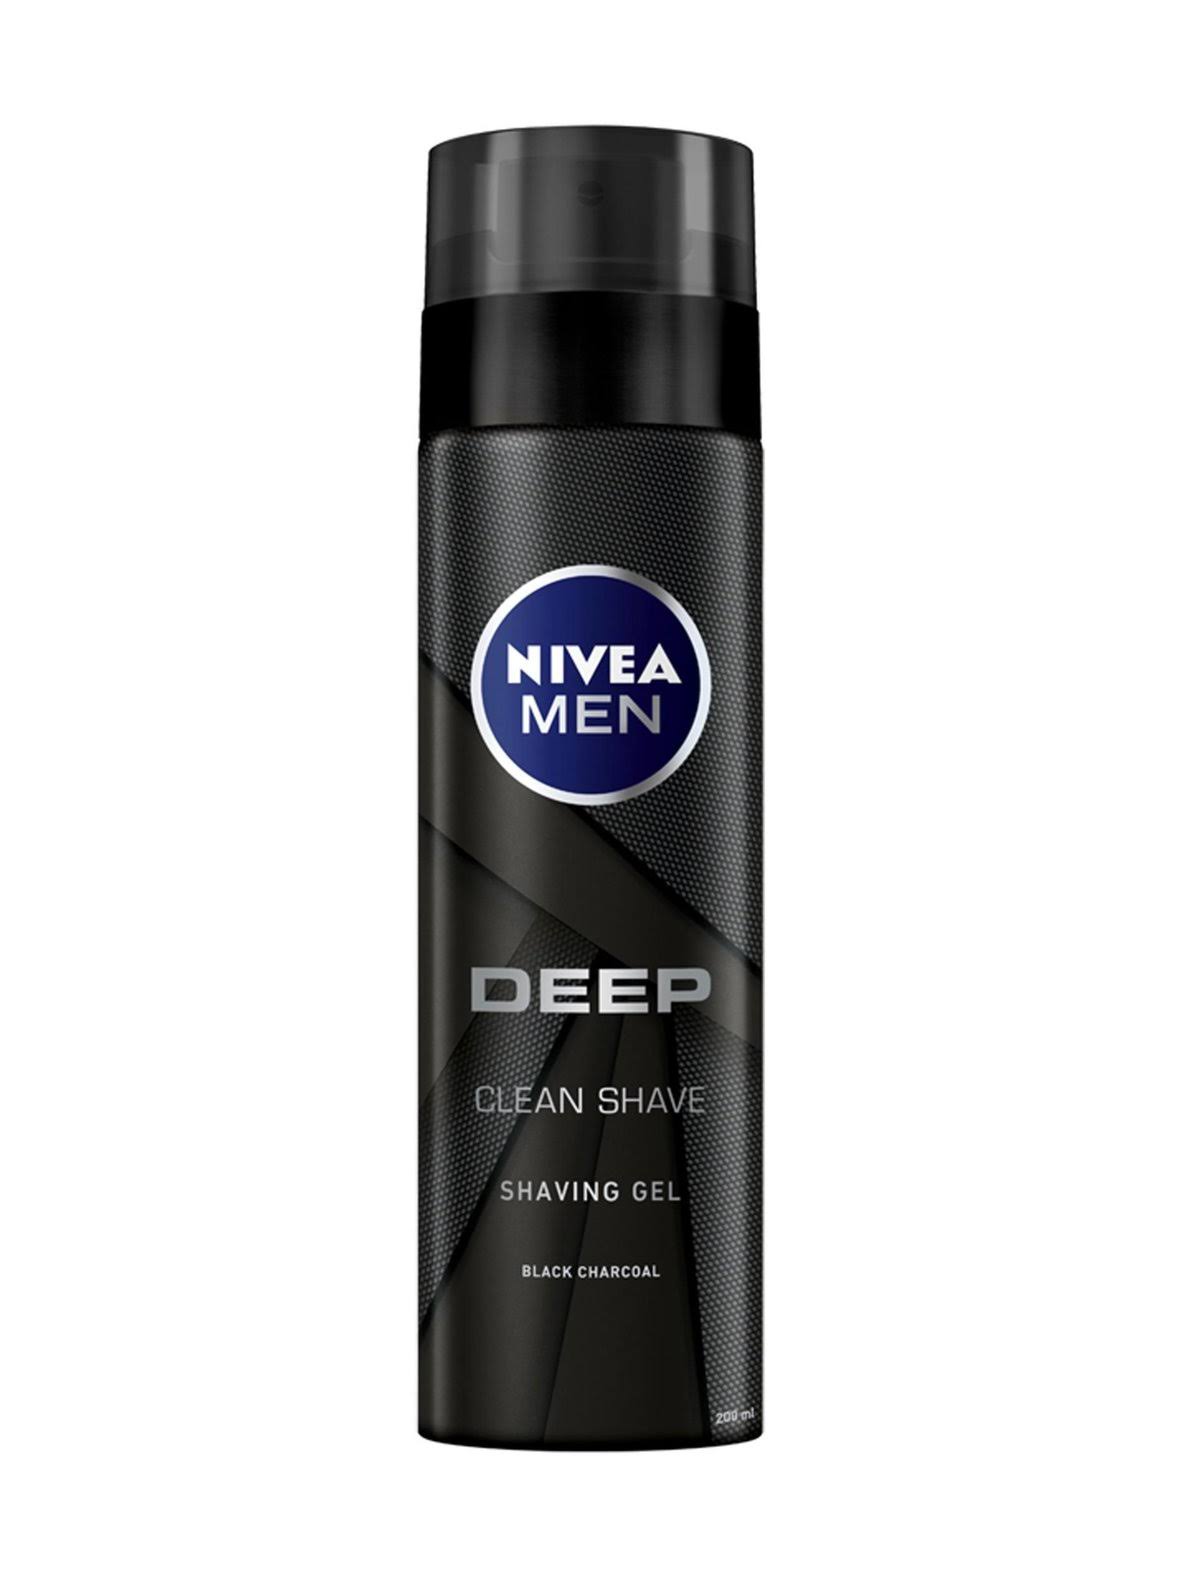 Nivea Men Deep Shaving Gel - 200ml